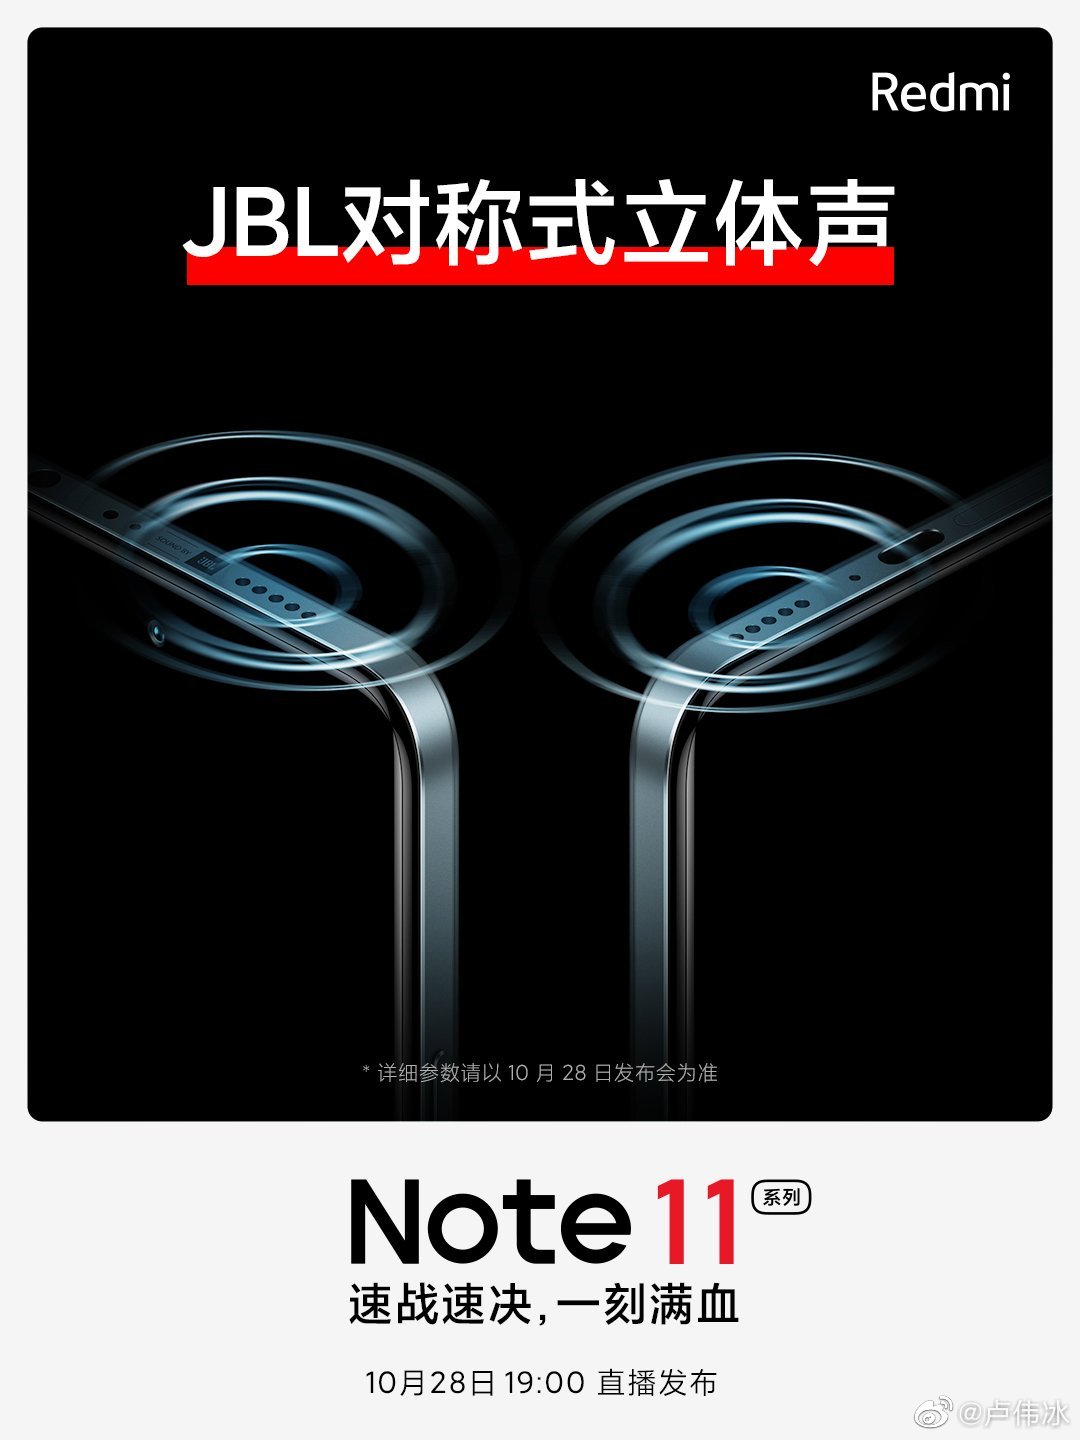 保留3.5mm耳机孔 Redmi Note 11联合JBL挑战旗舰音质